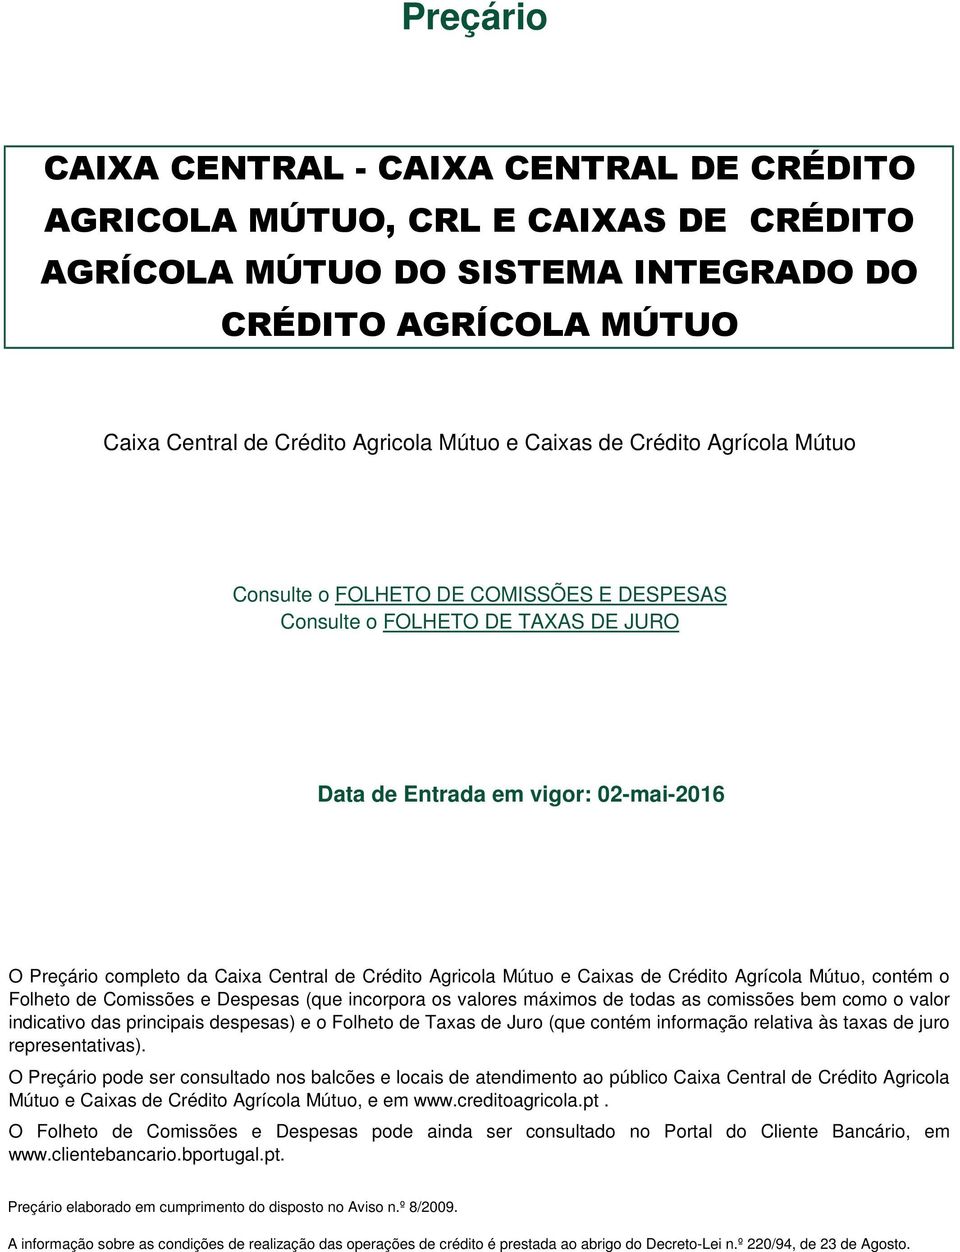 Agricola Mútuo e Caixas de Crédito Agrícola Mútuo, contém o Folheto de Comissões e Despesas (que incorpora os valores máximos de todas as comissões bem como o valor indicativo das principais